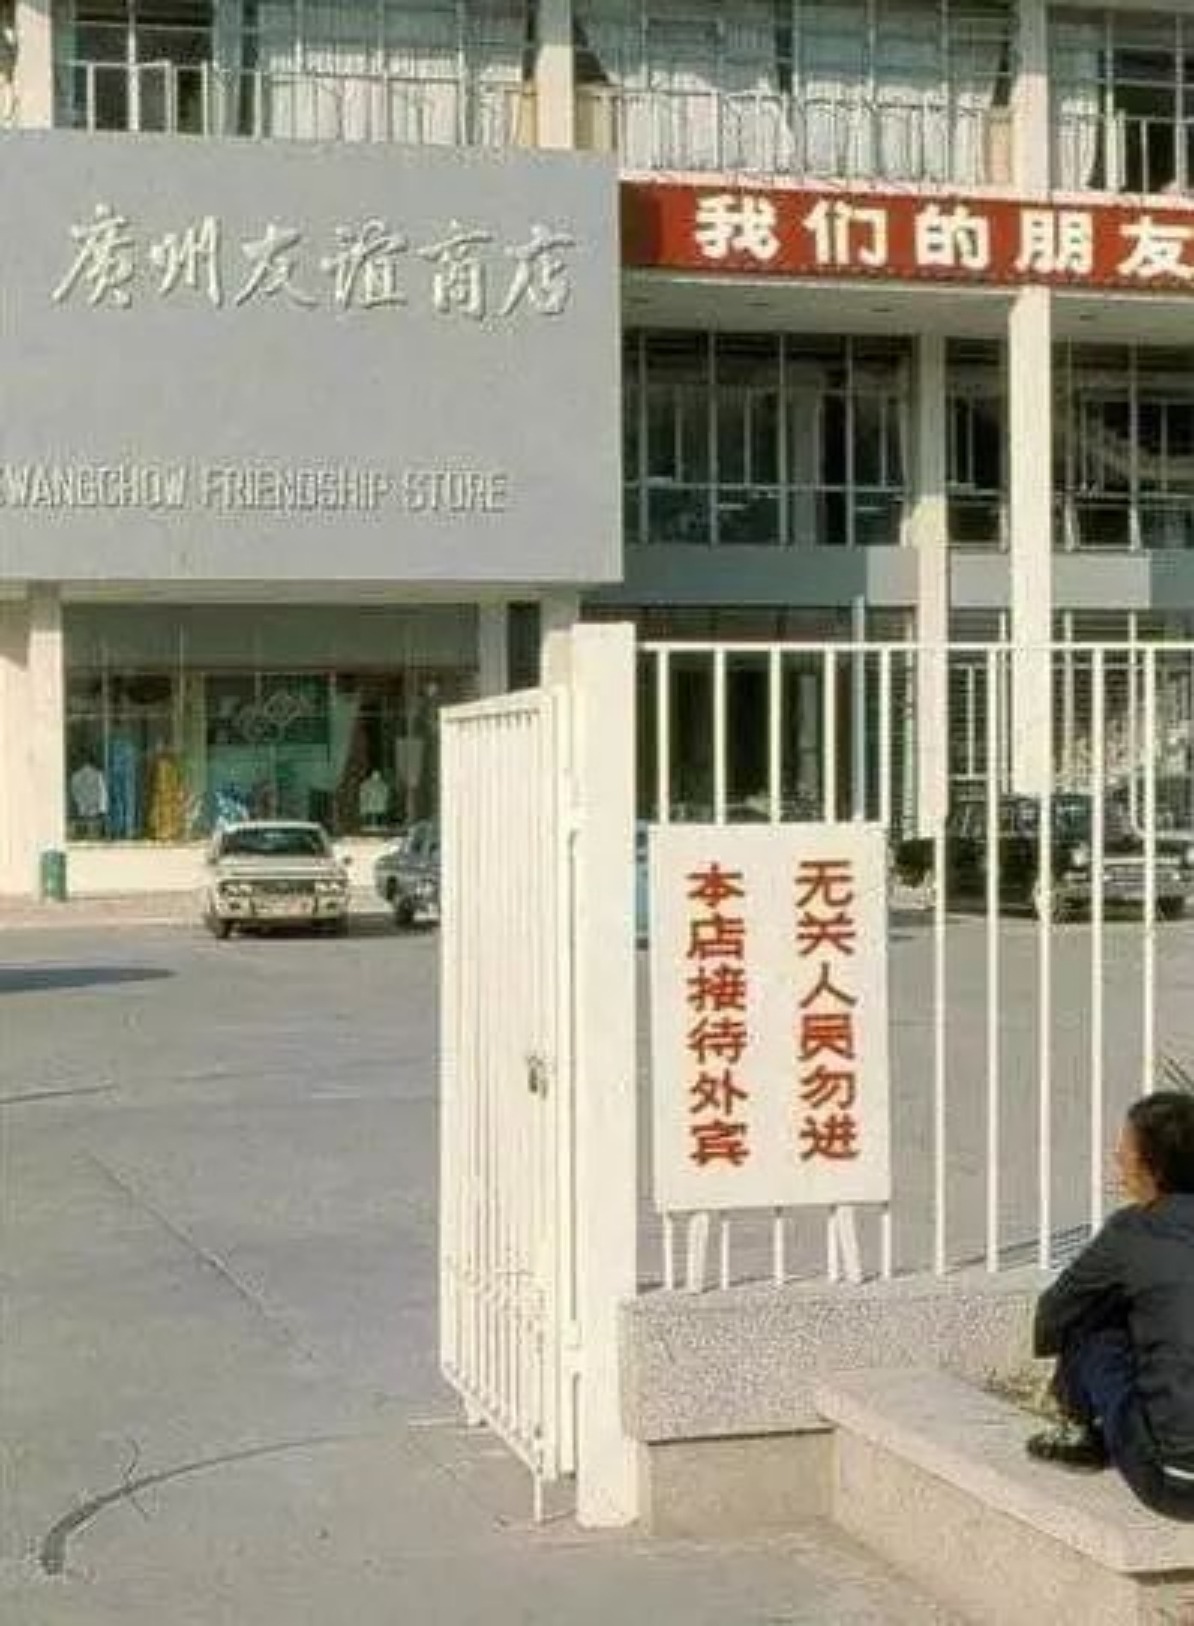 廣州友誼商店初期只接待外賓。